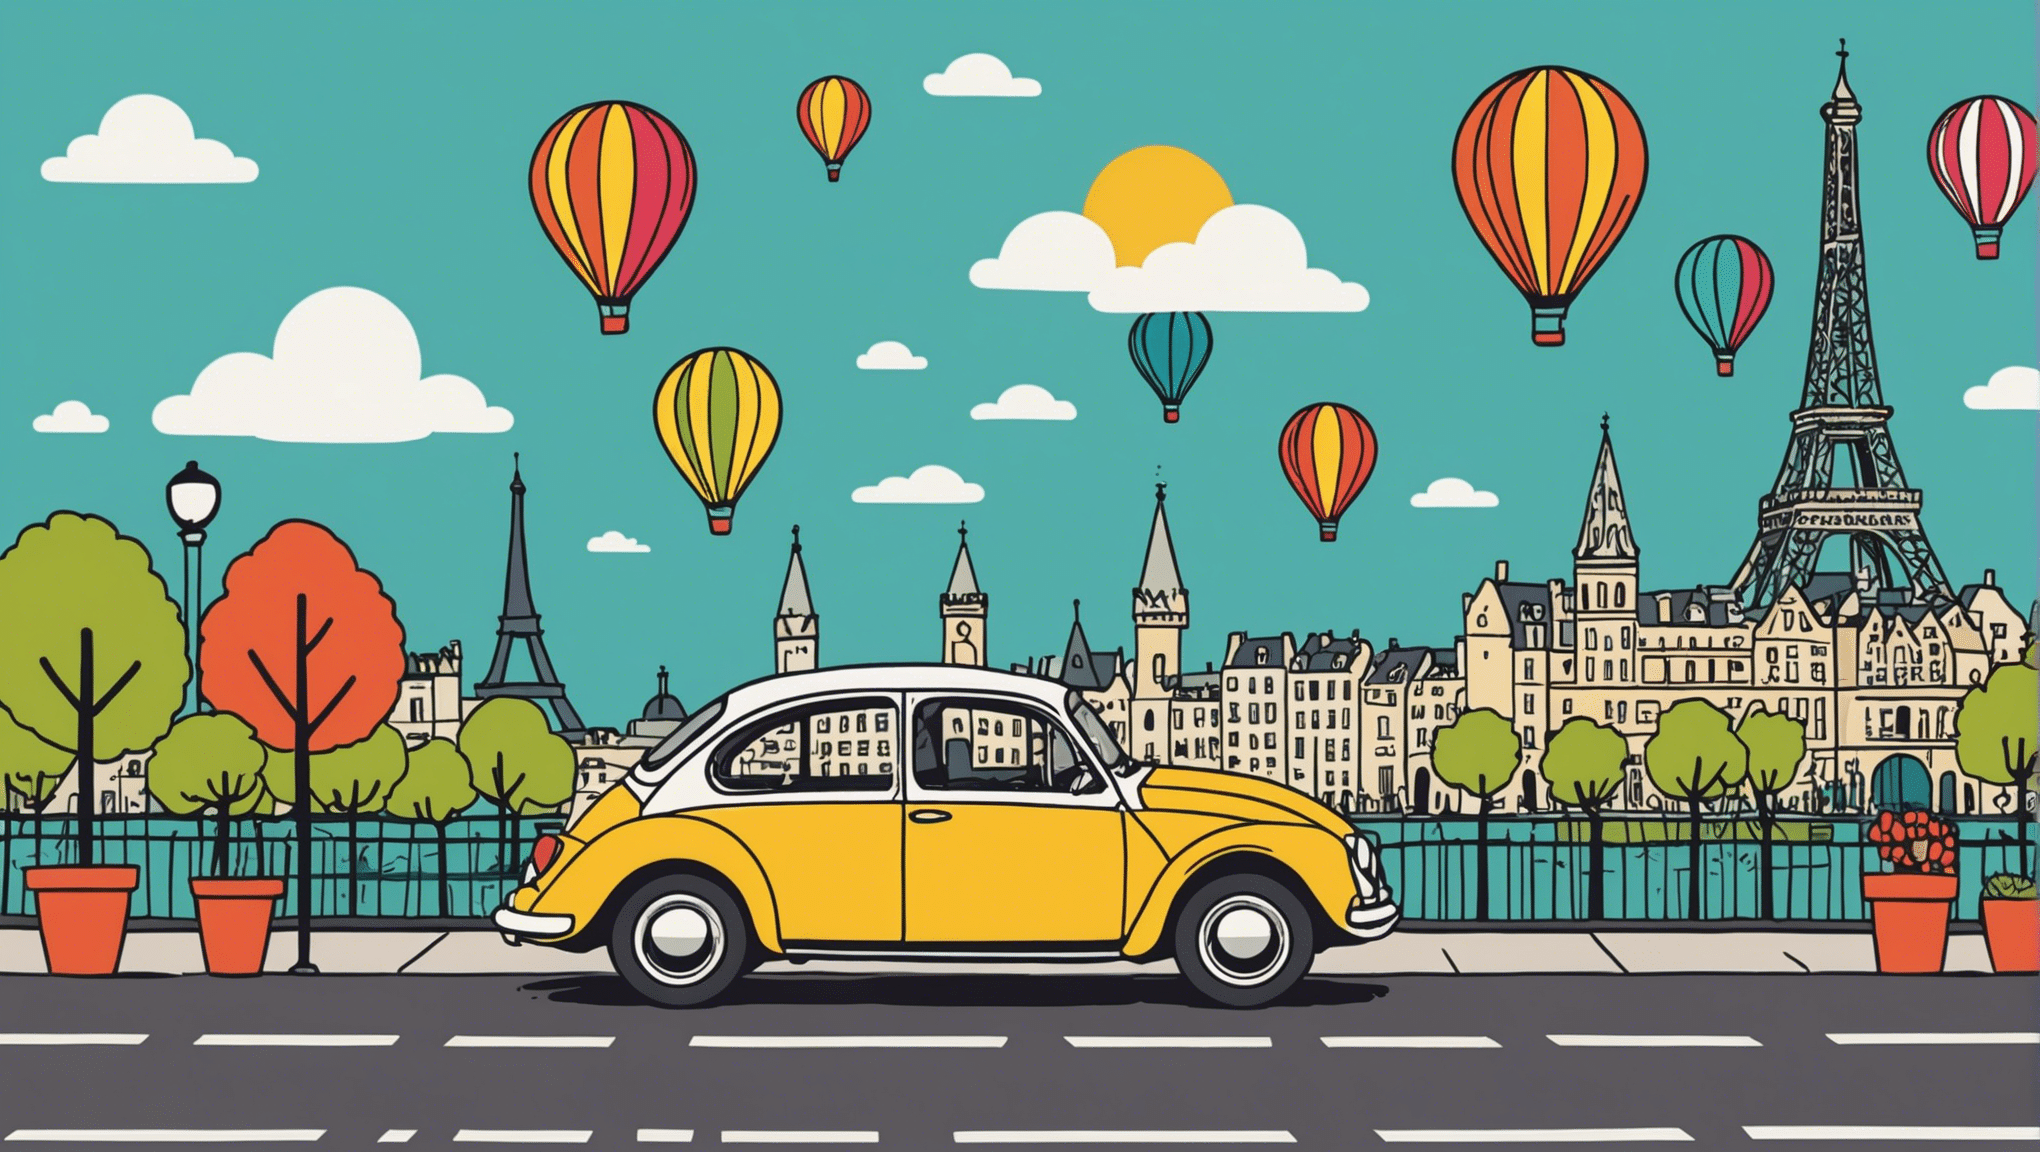 découvrez nos offres pour un week-end inoubliable près de paris et vivez des expériences mémorables. trouvez la meilleure façon de profiter de votre séjour proche de la capitale française.